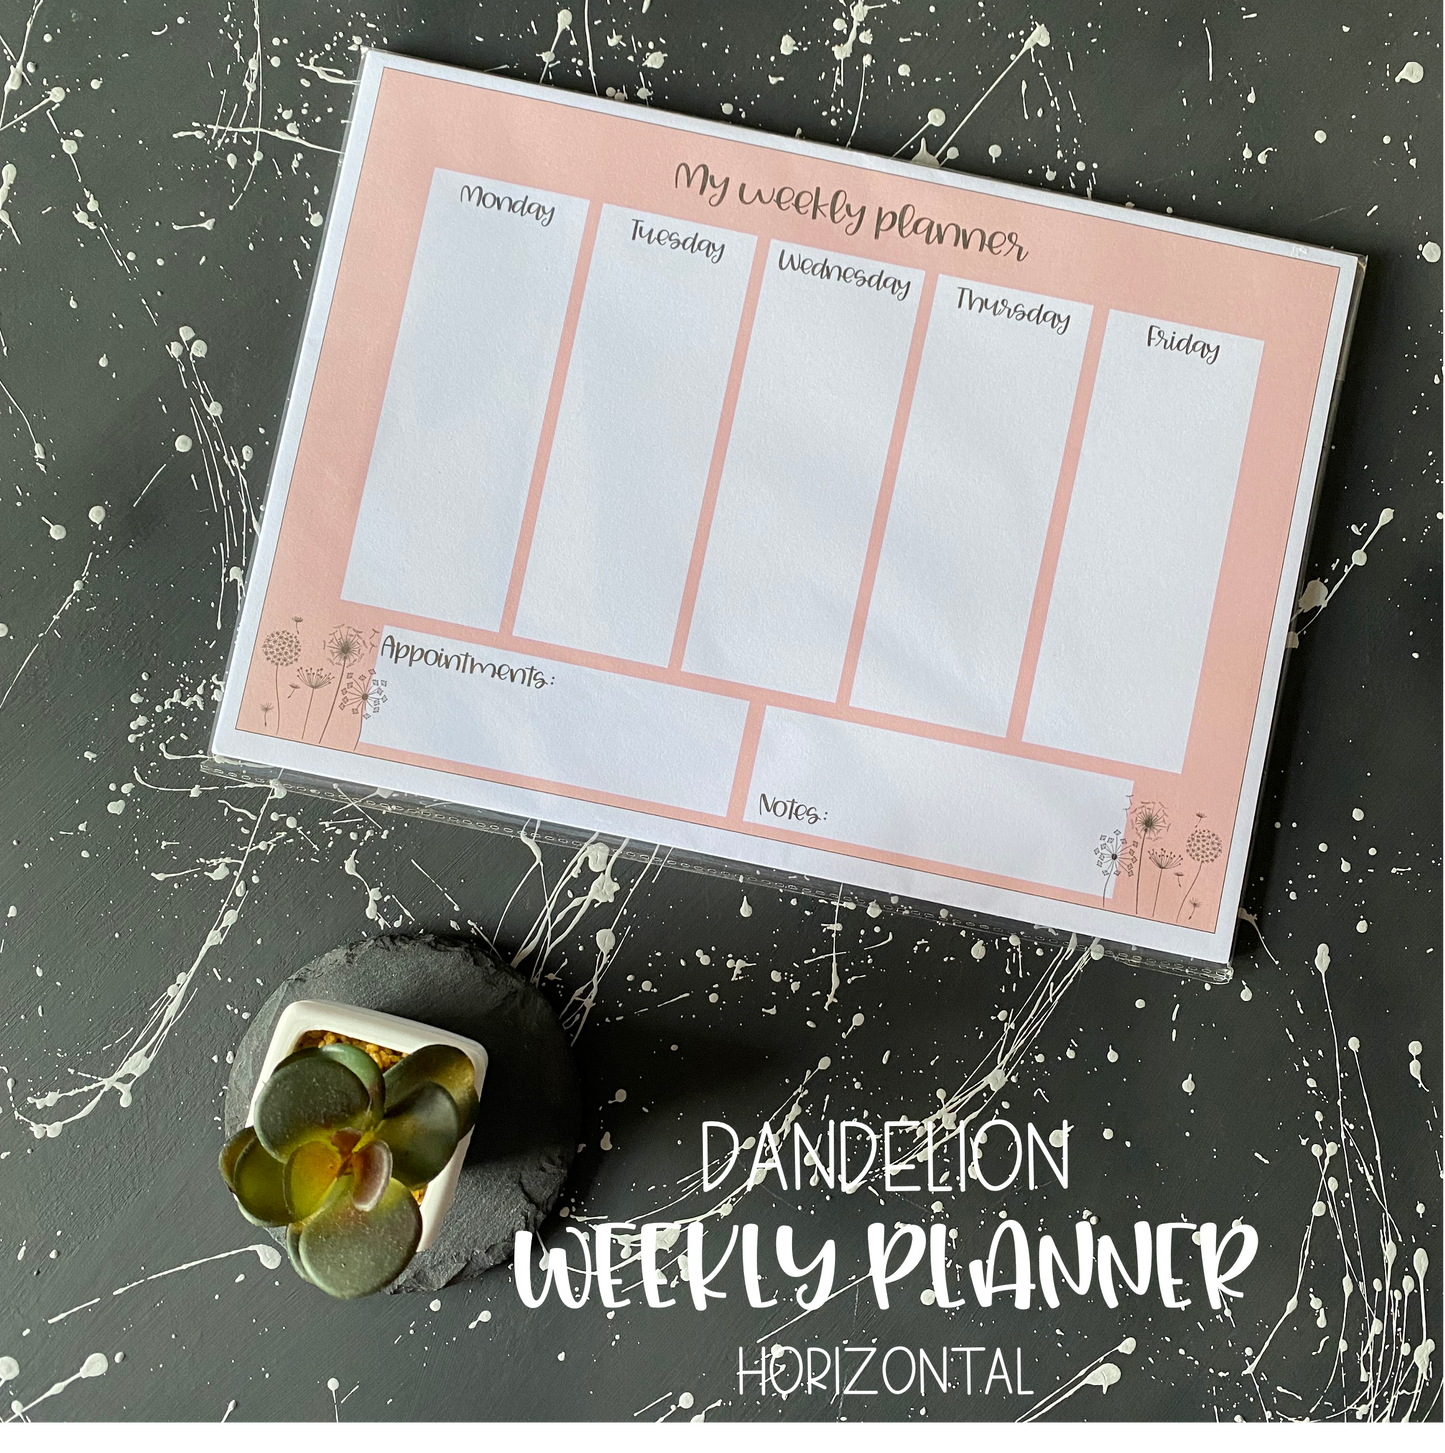 Dandelion Weekly Planner